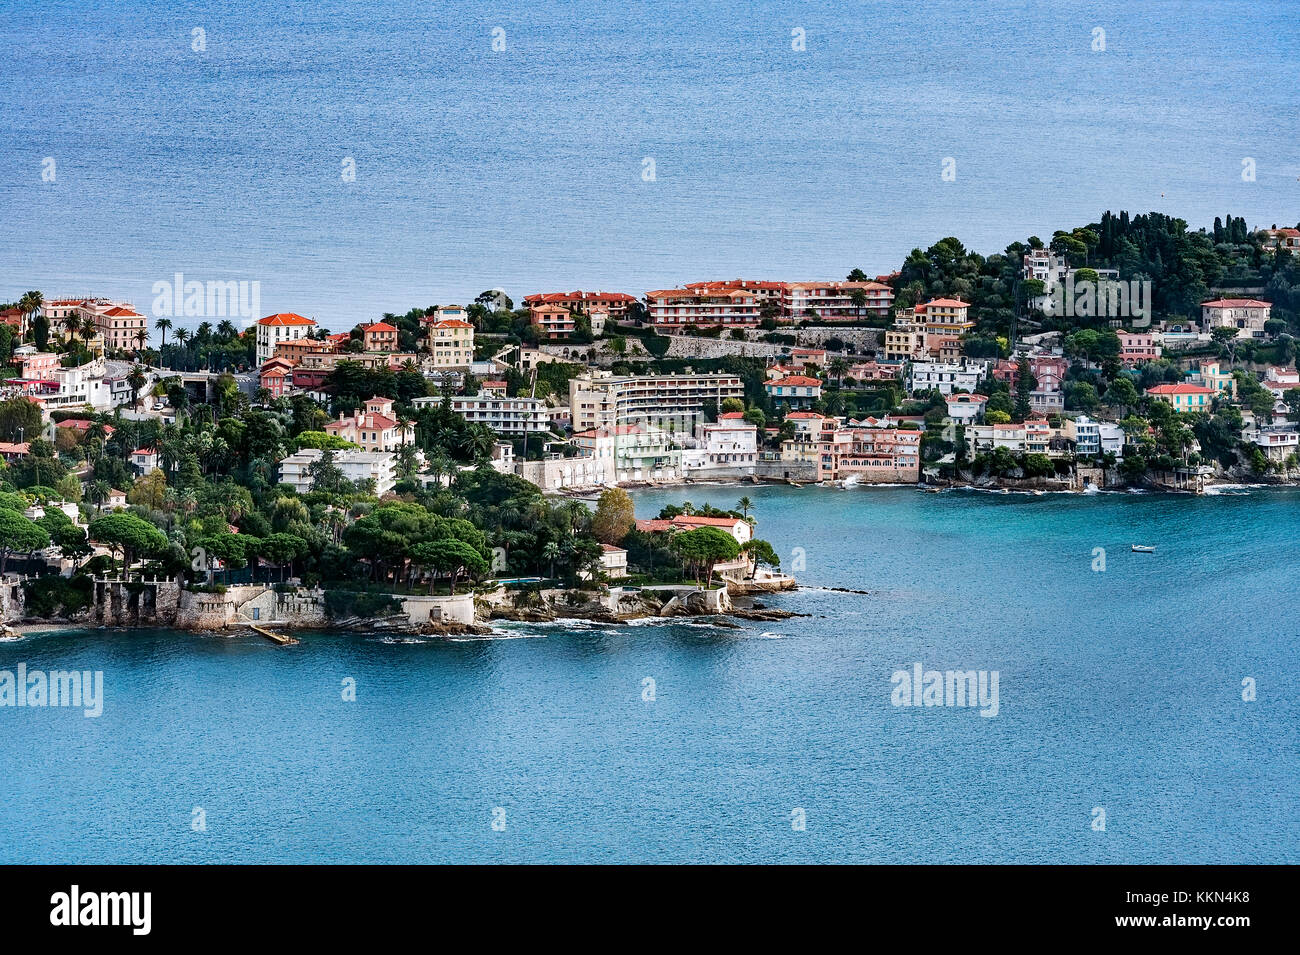 Luftaufnahme der französischen Gemeinde Saint Jean Cap Ferrat, Côte d'Azur, Côte d'Azur, Frankreich, Europa. Stockfoto